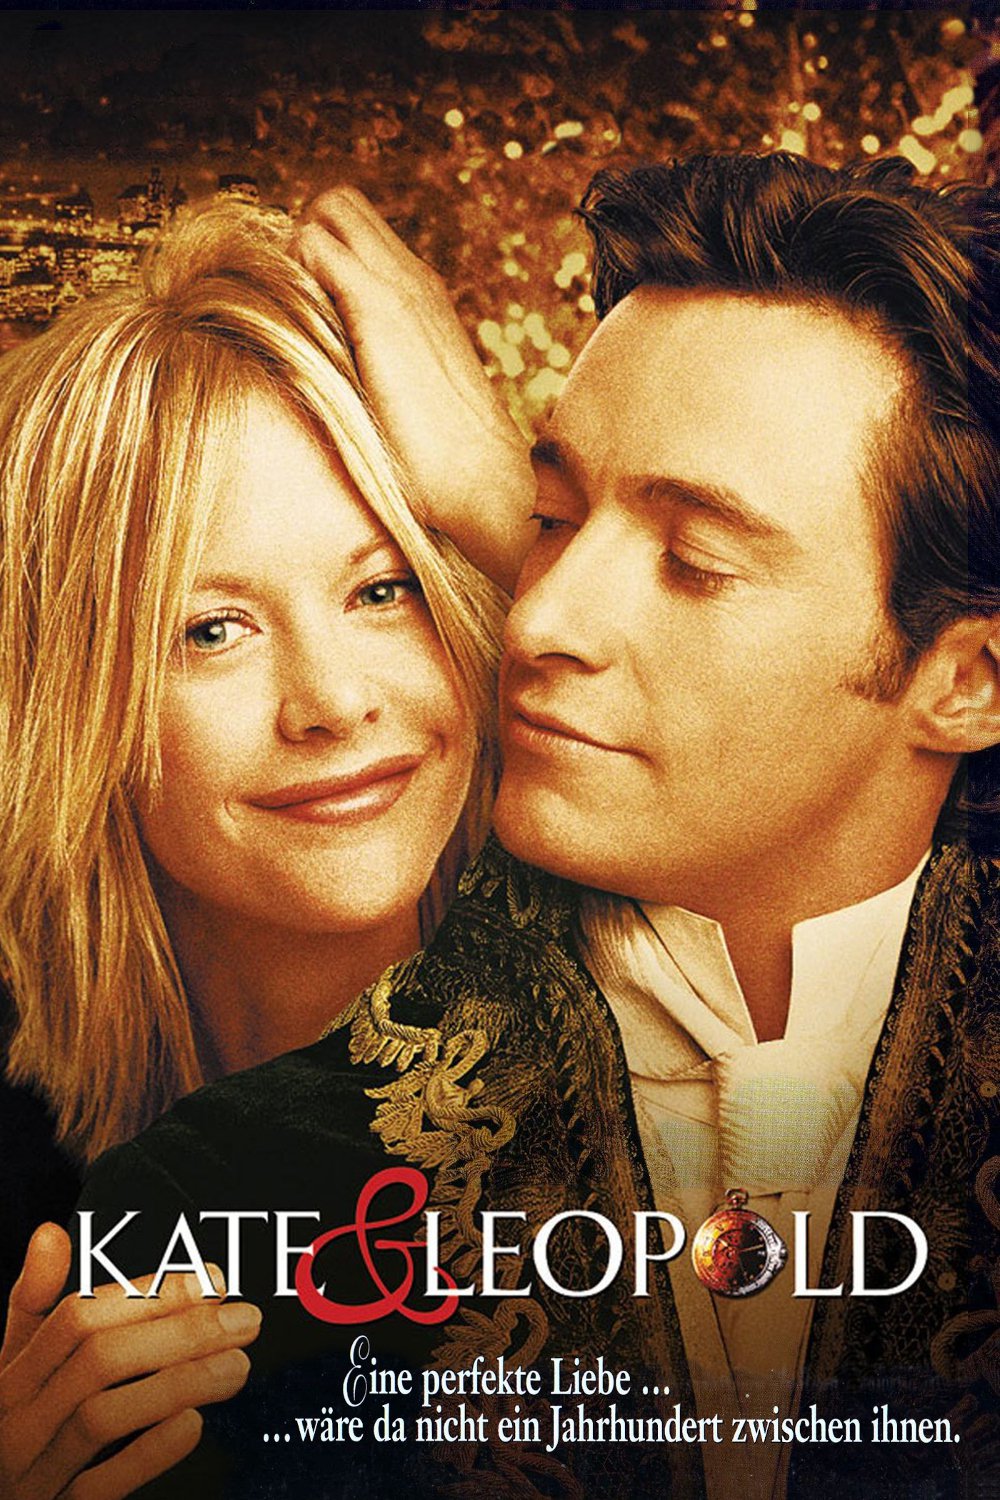 Plakat von "Kate & Leopold"